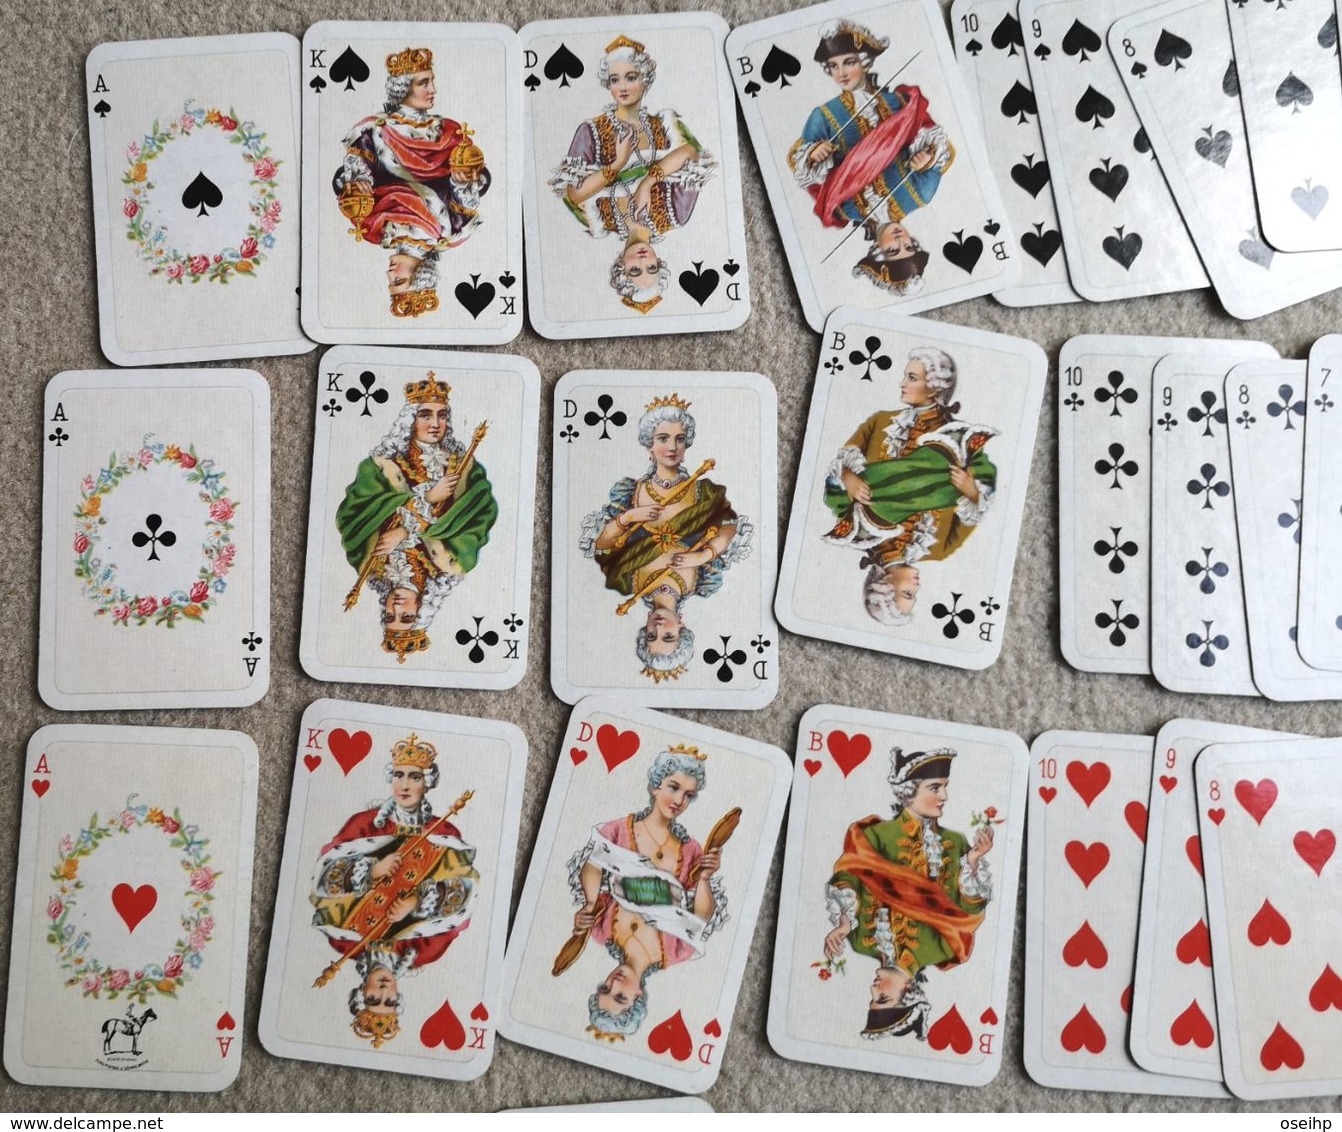 Boite 2 Jeux Jeu Miniature de Cartes 54 Cartes à Jouer PIATNIK & Shne Wien 89 NR 119 Playing Cards Vintage